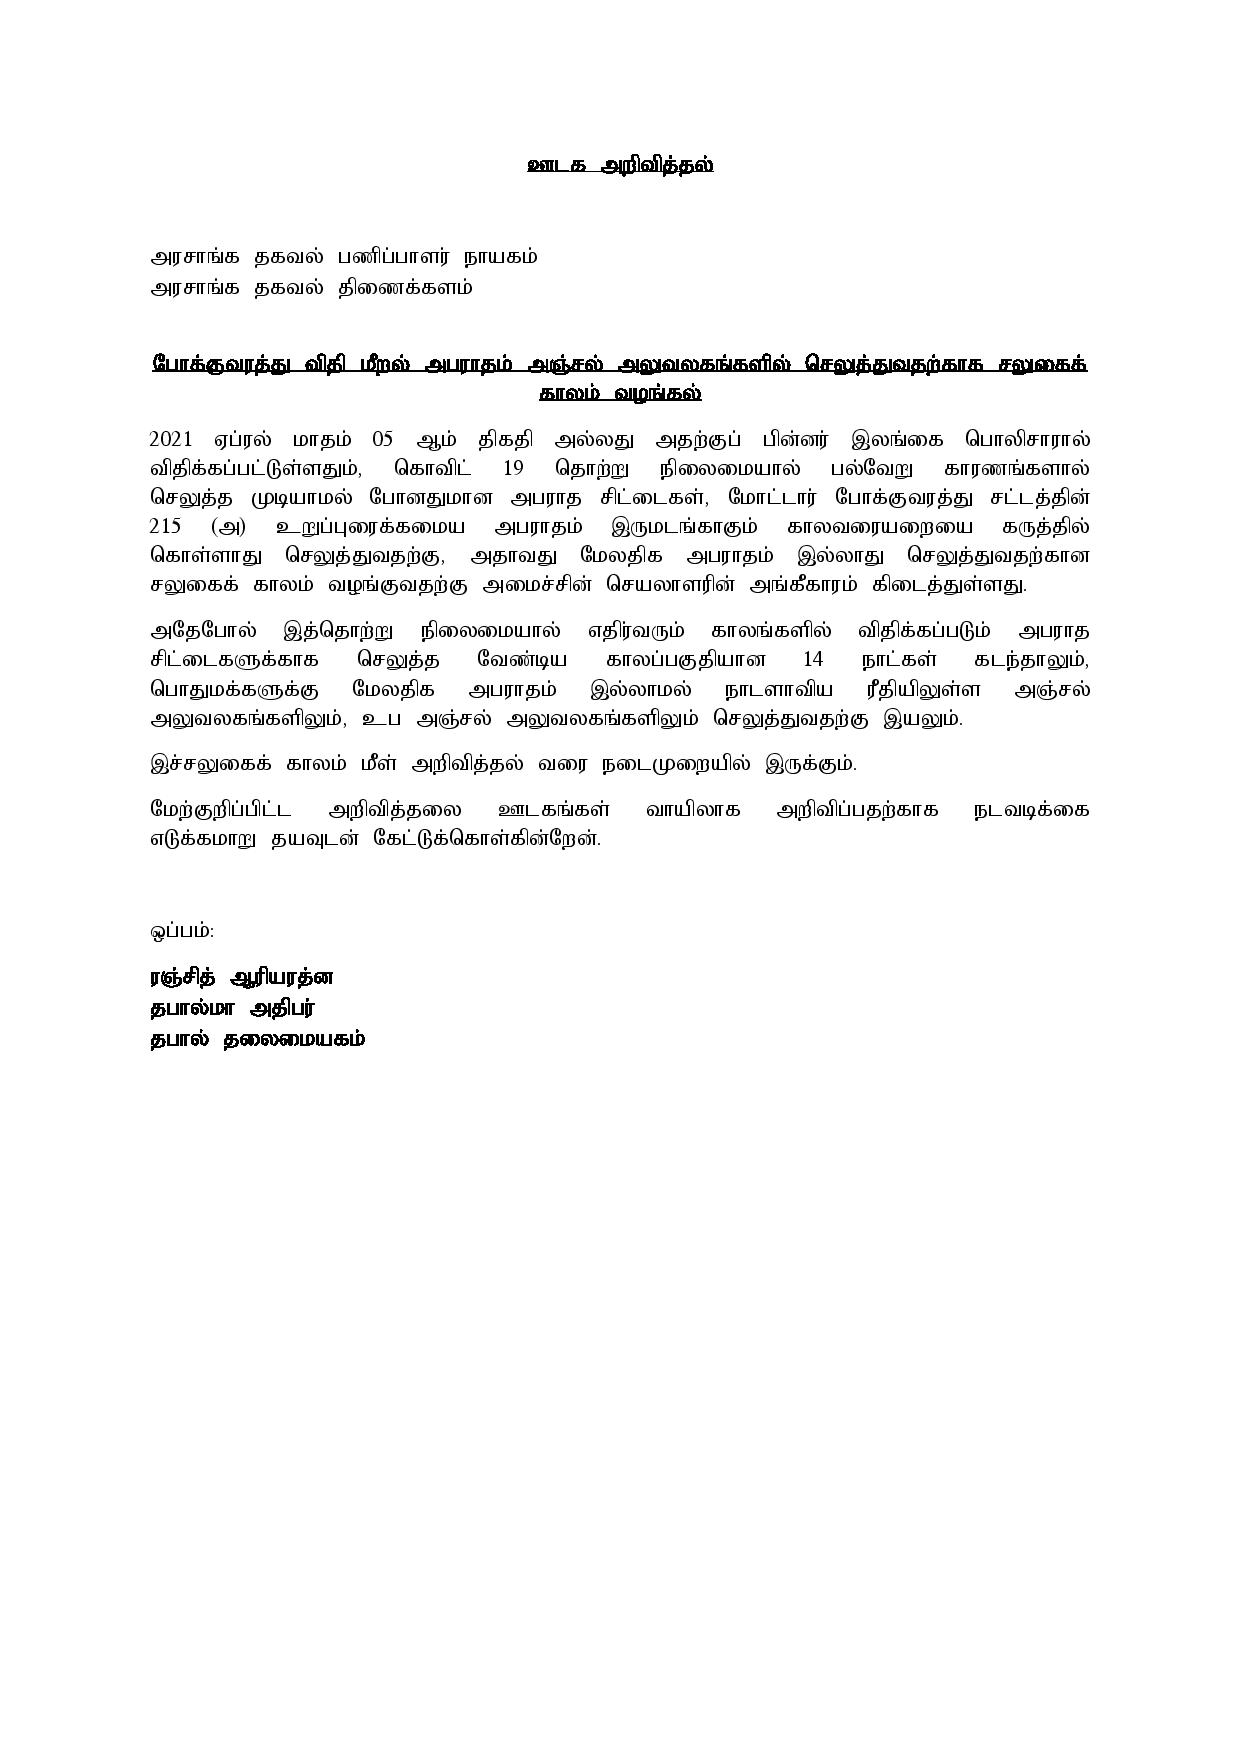 Media Release Tamil Sri Lanka Post page 001